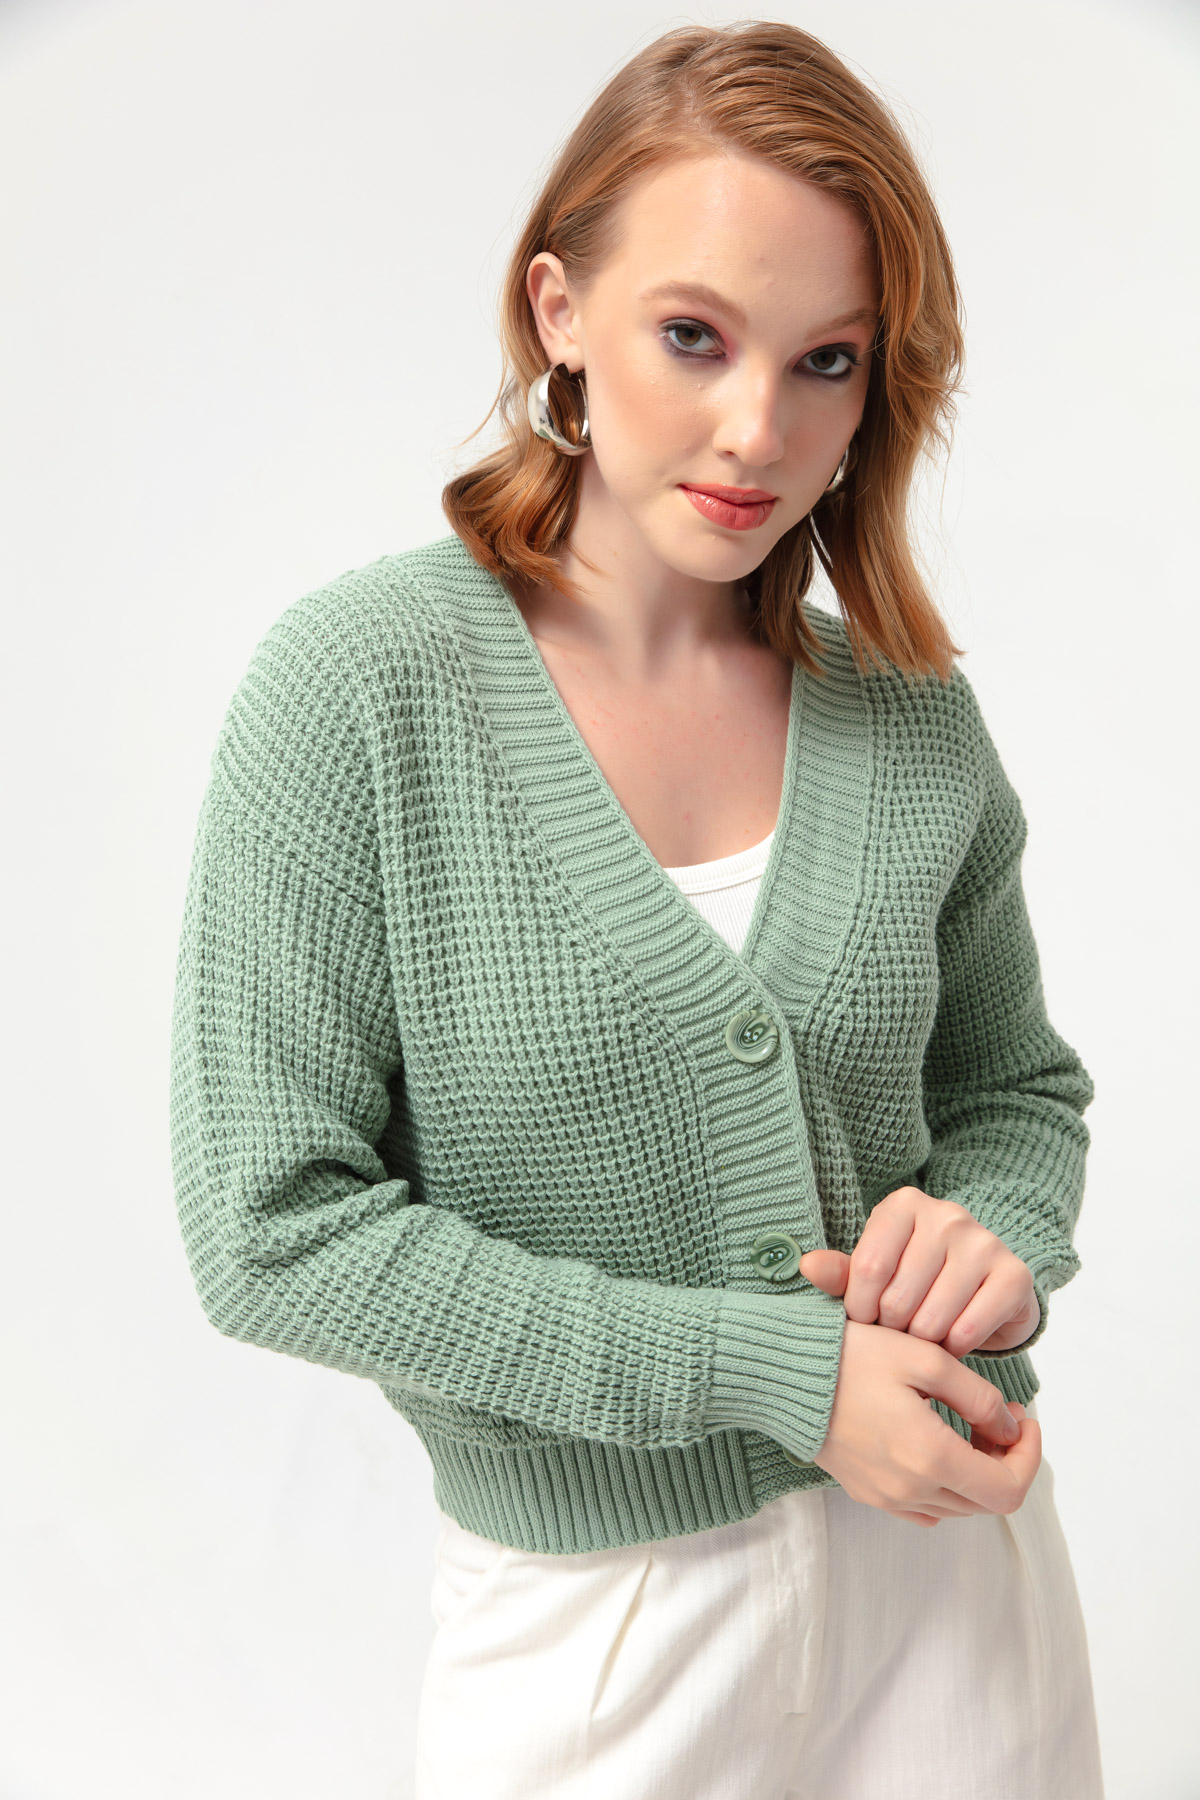 Women's Mint Green Knitwear Cardigan